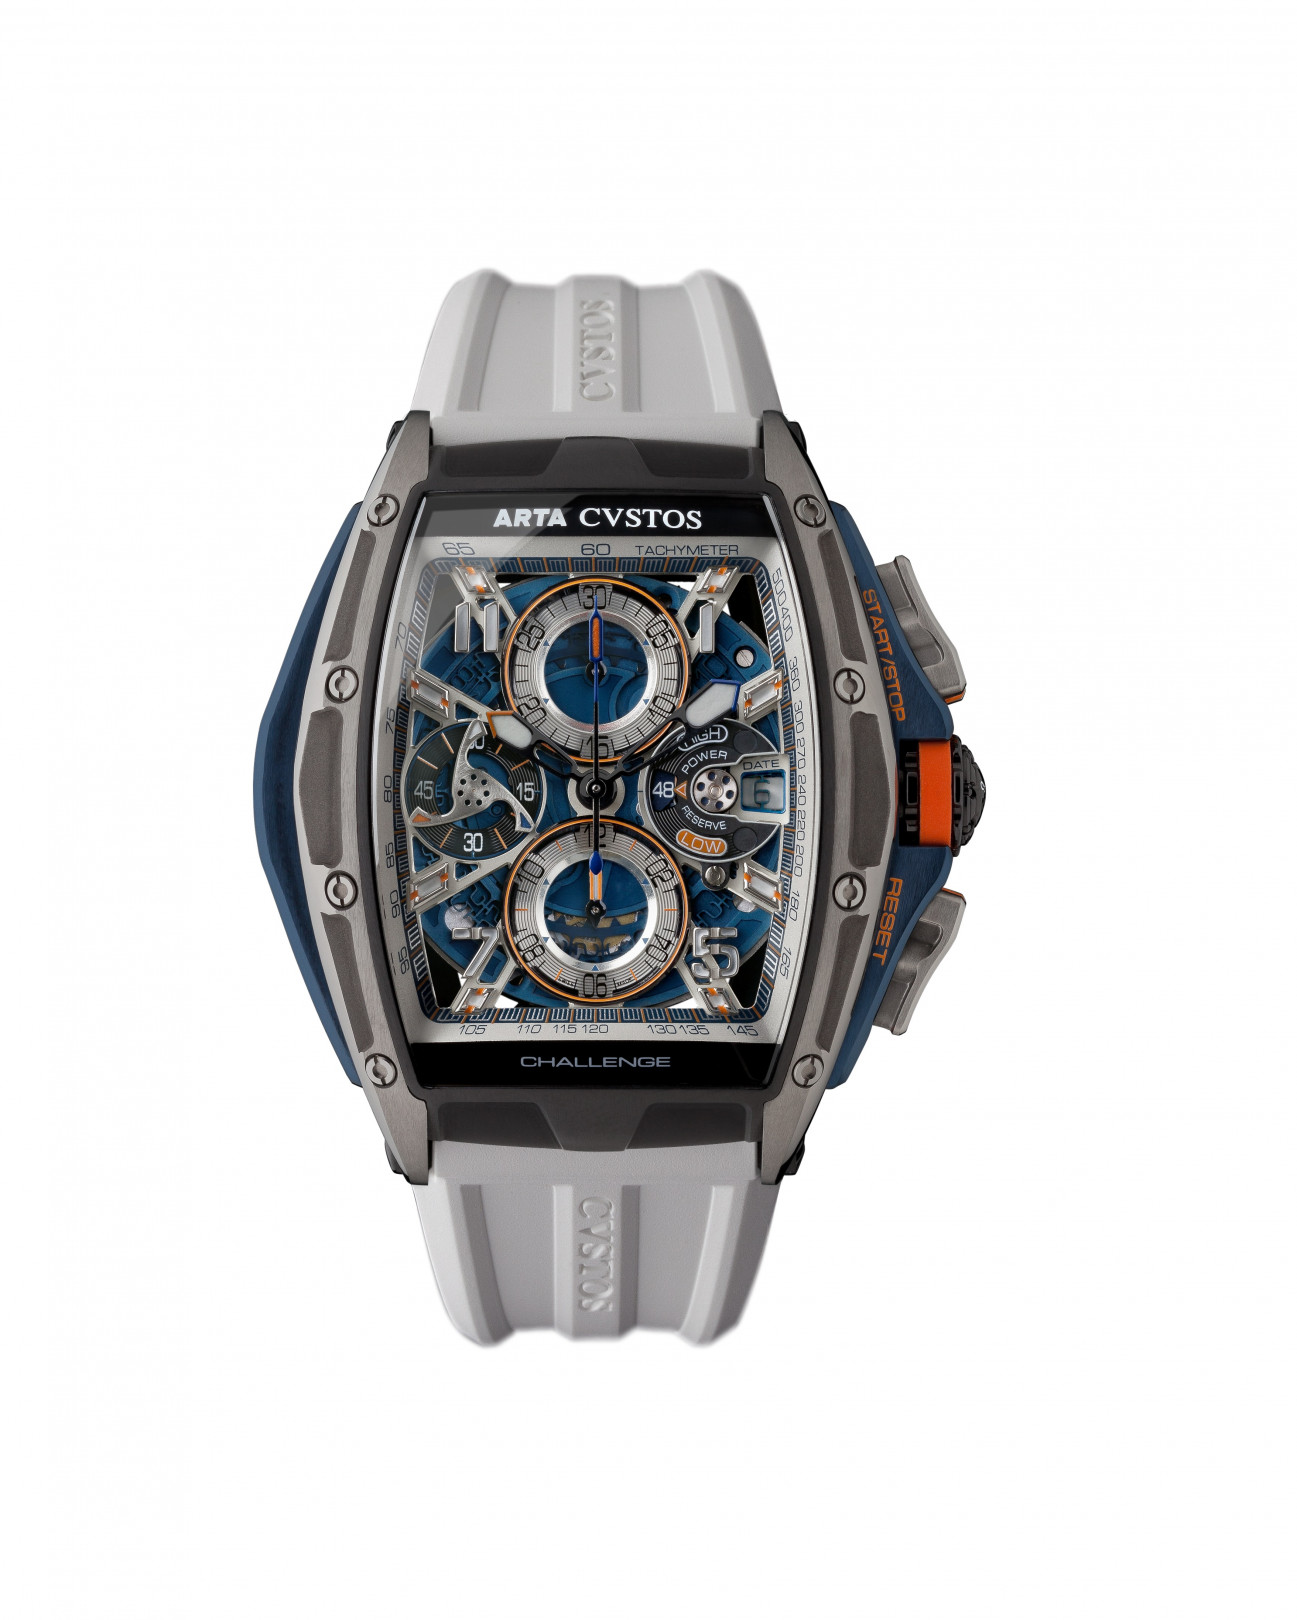 スイス機械式腕時計「クストス」がレーシングチーム・ARTAとのコラボモデル発表。GTマシンの展示イベントも開催